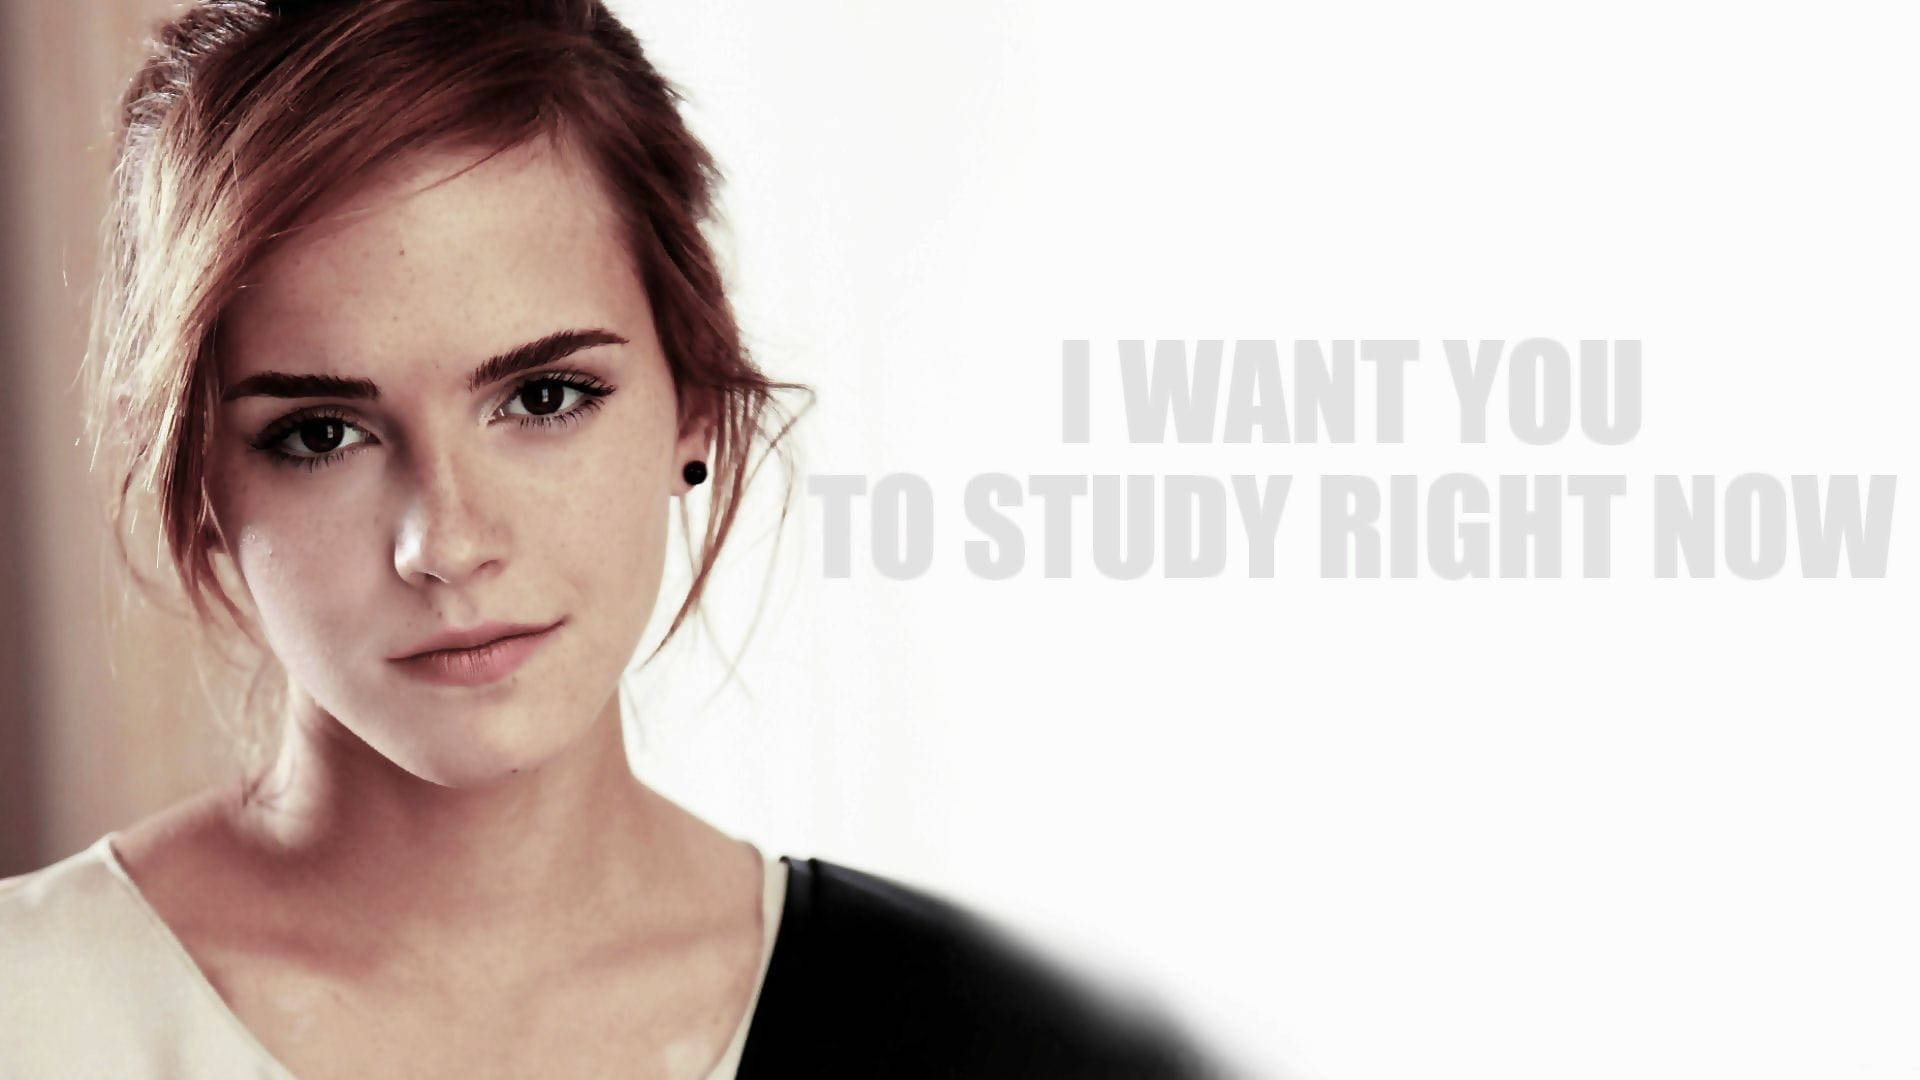 Emma Watson Study Quote